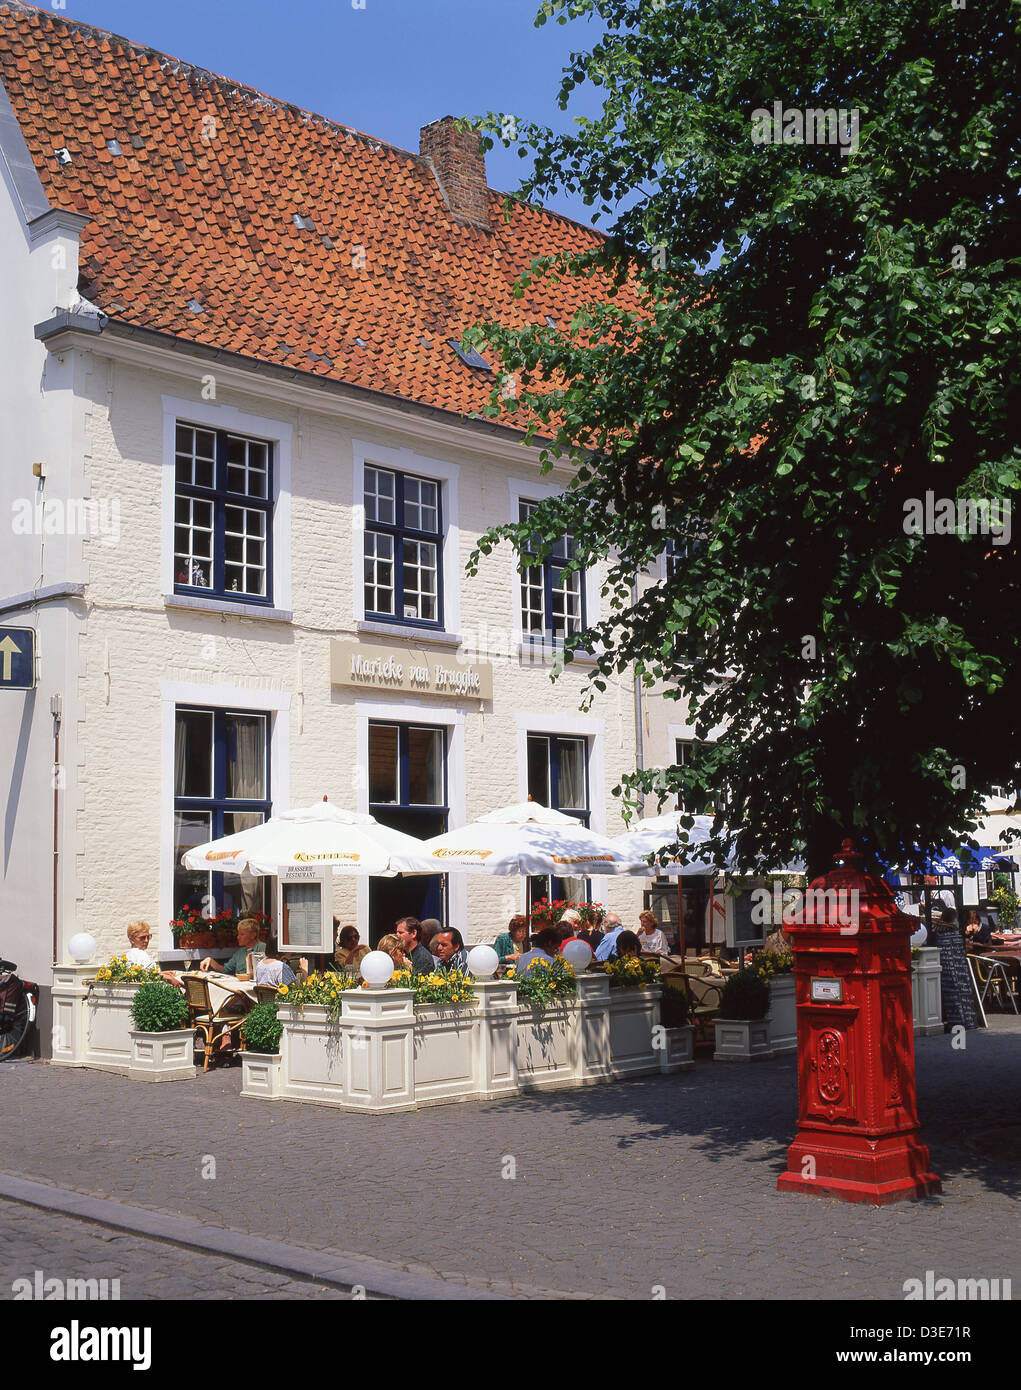 Marieke van Brugghe Brasserie restaurant, Mariastraat, Bruges, West Flanders, Kingdom of Belgium Stock Photo